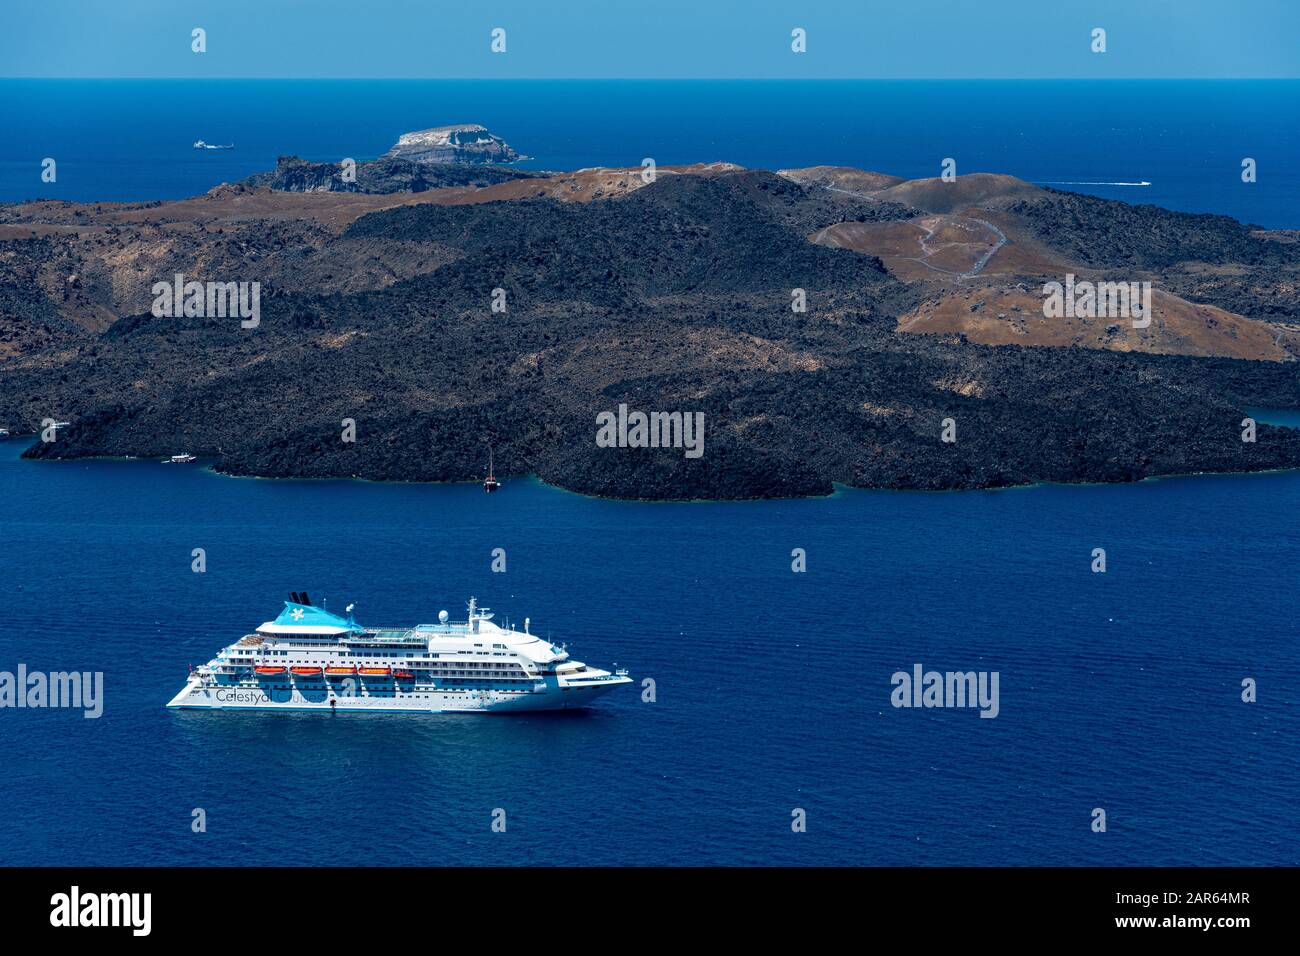 Cruceros a las islas e imágenes de resolución - Página 3 Alamy